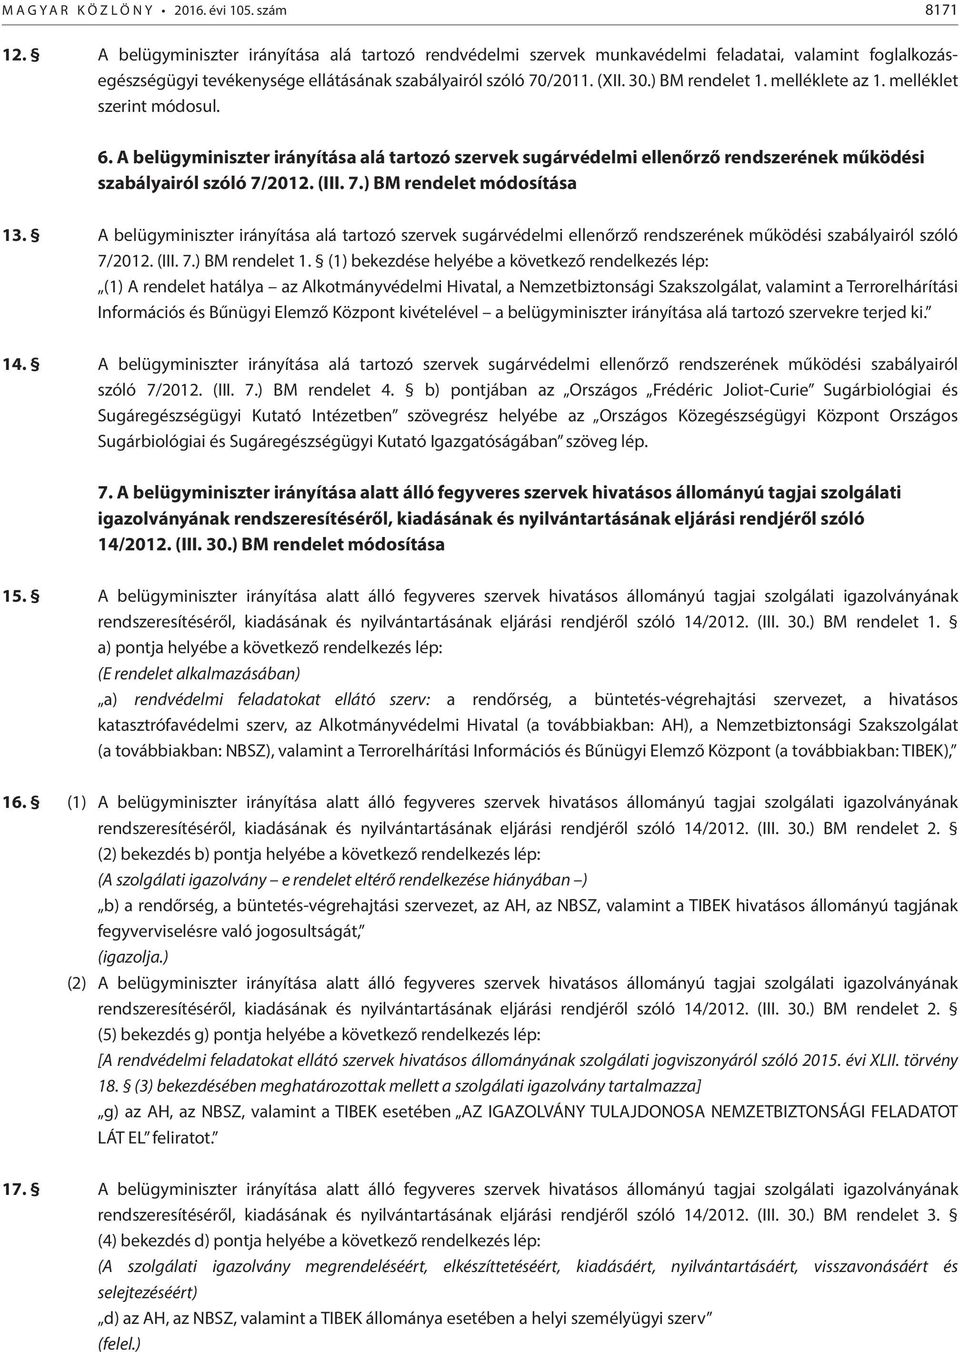 melléklete az 1. melléklet szerint módosul. 6. A belügyminiszter irányítása alá tartozó szervek sugárvédelmi ellenőrző rendszerének működési szabályairól szóló 7/2012. (III. 7.) BM rendelet módosítása 13.